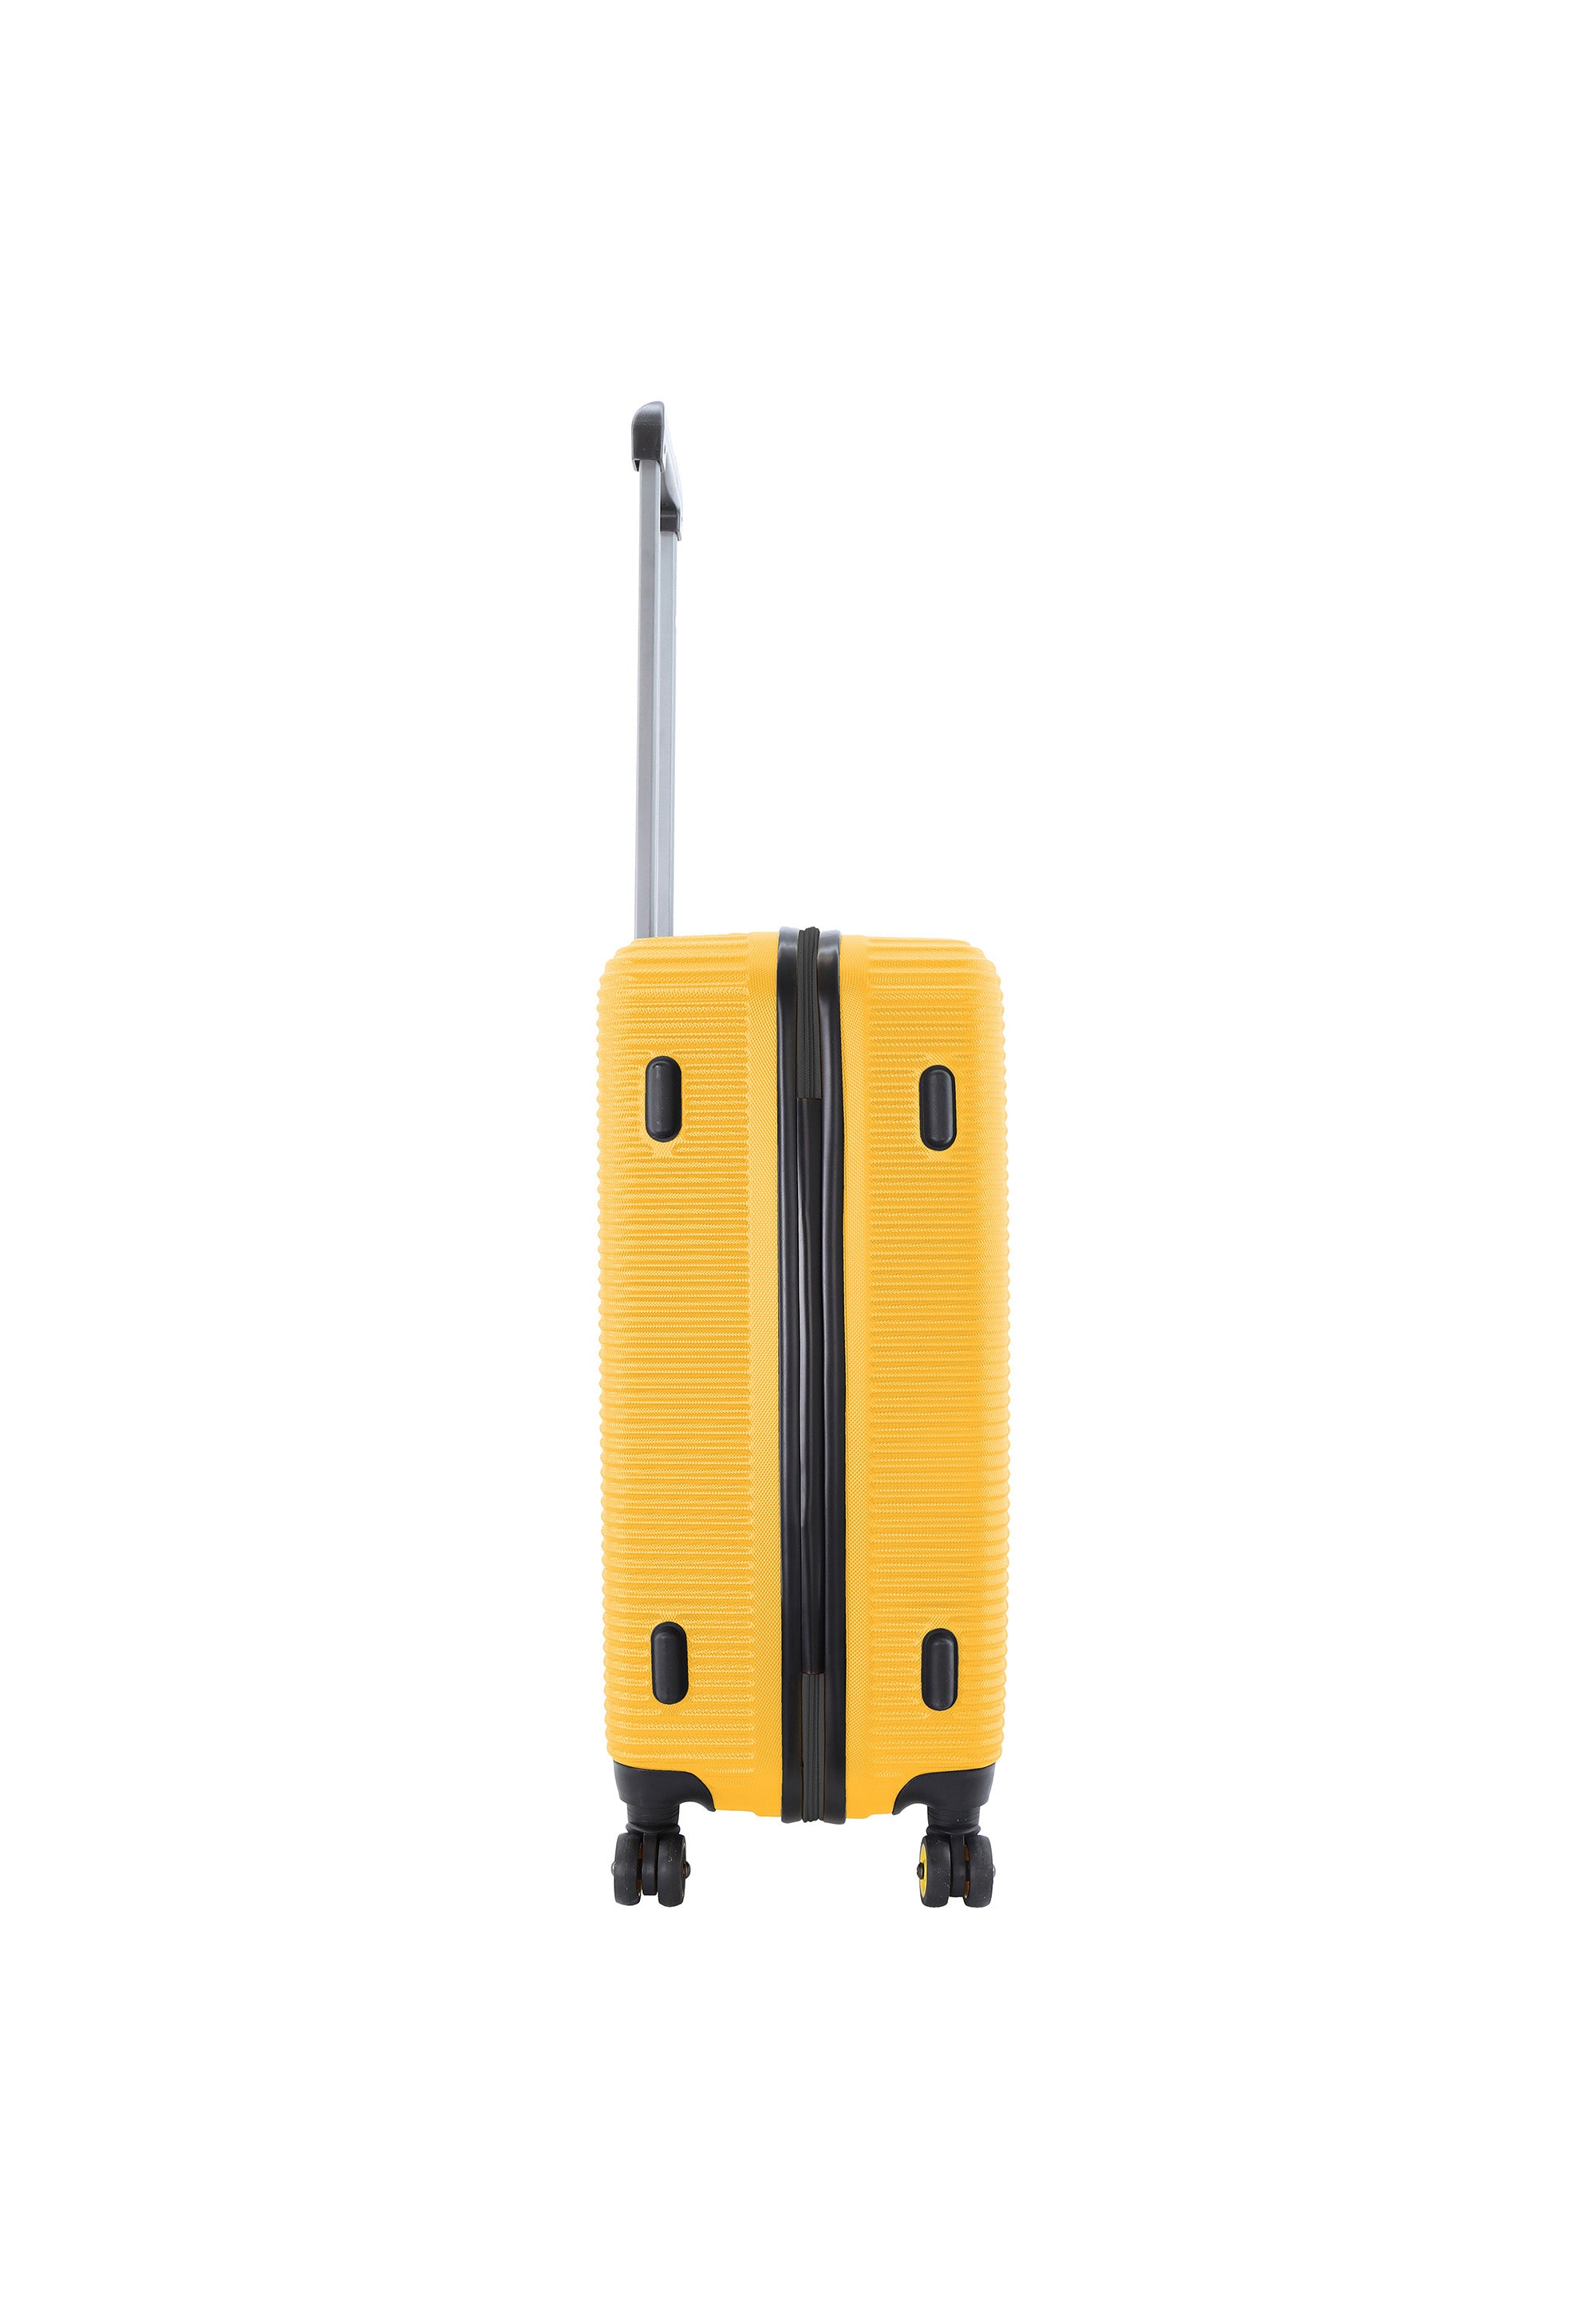 National Geographic - Abroad Hartschalenkoffer / Trolley / Reisekoffer - 67 cm - (Medium) - Gelb